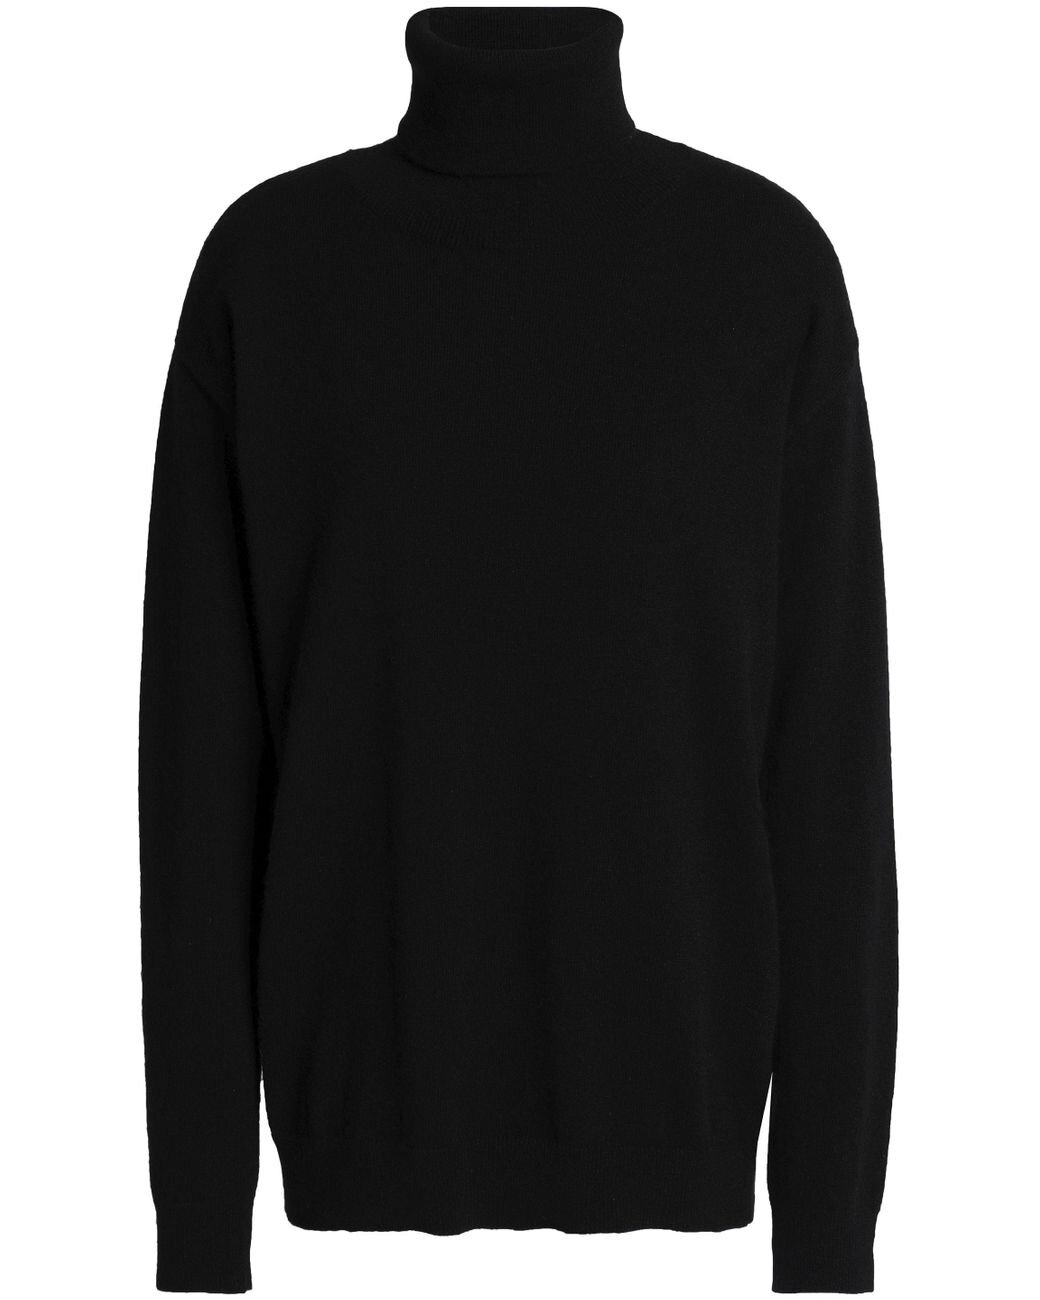 day-birger-et-mikkelsen-Black-Cashmere-Turtleneck-Sweater.jpg